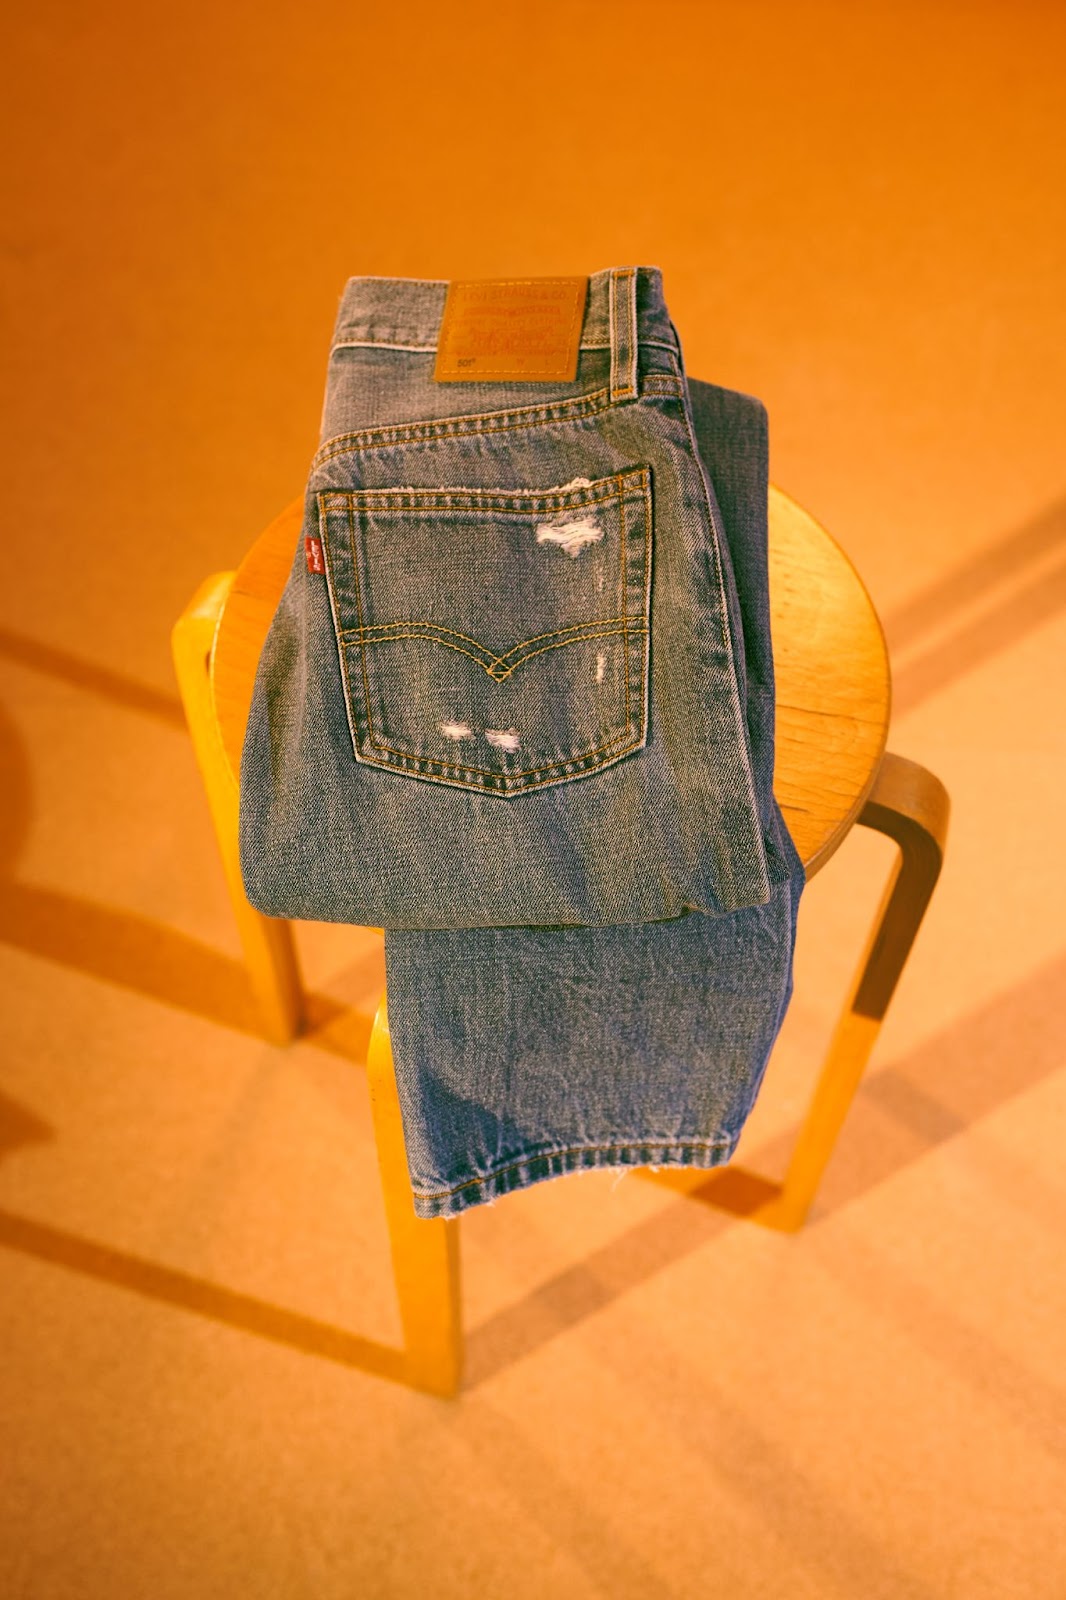 Jeans Levi's 501 apresenta novas variações inspiradas em edições do modelo  clássico